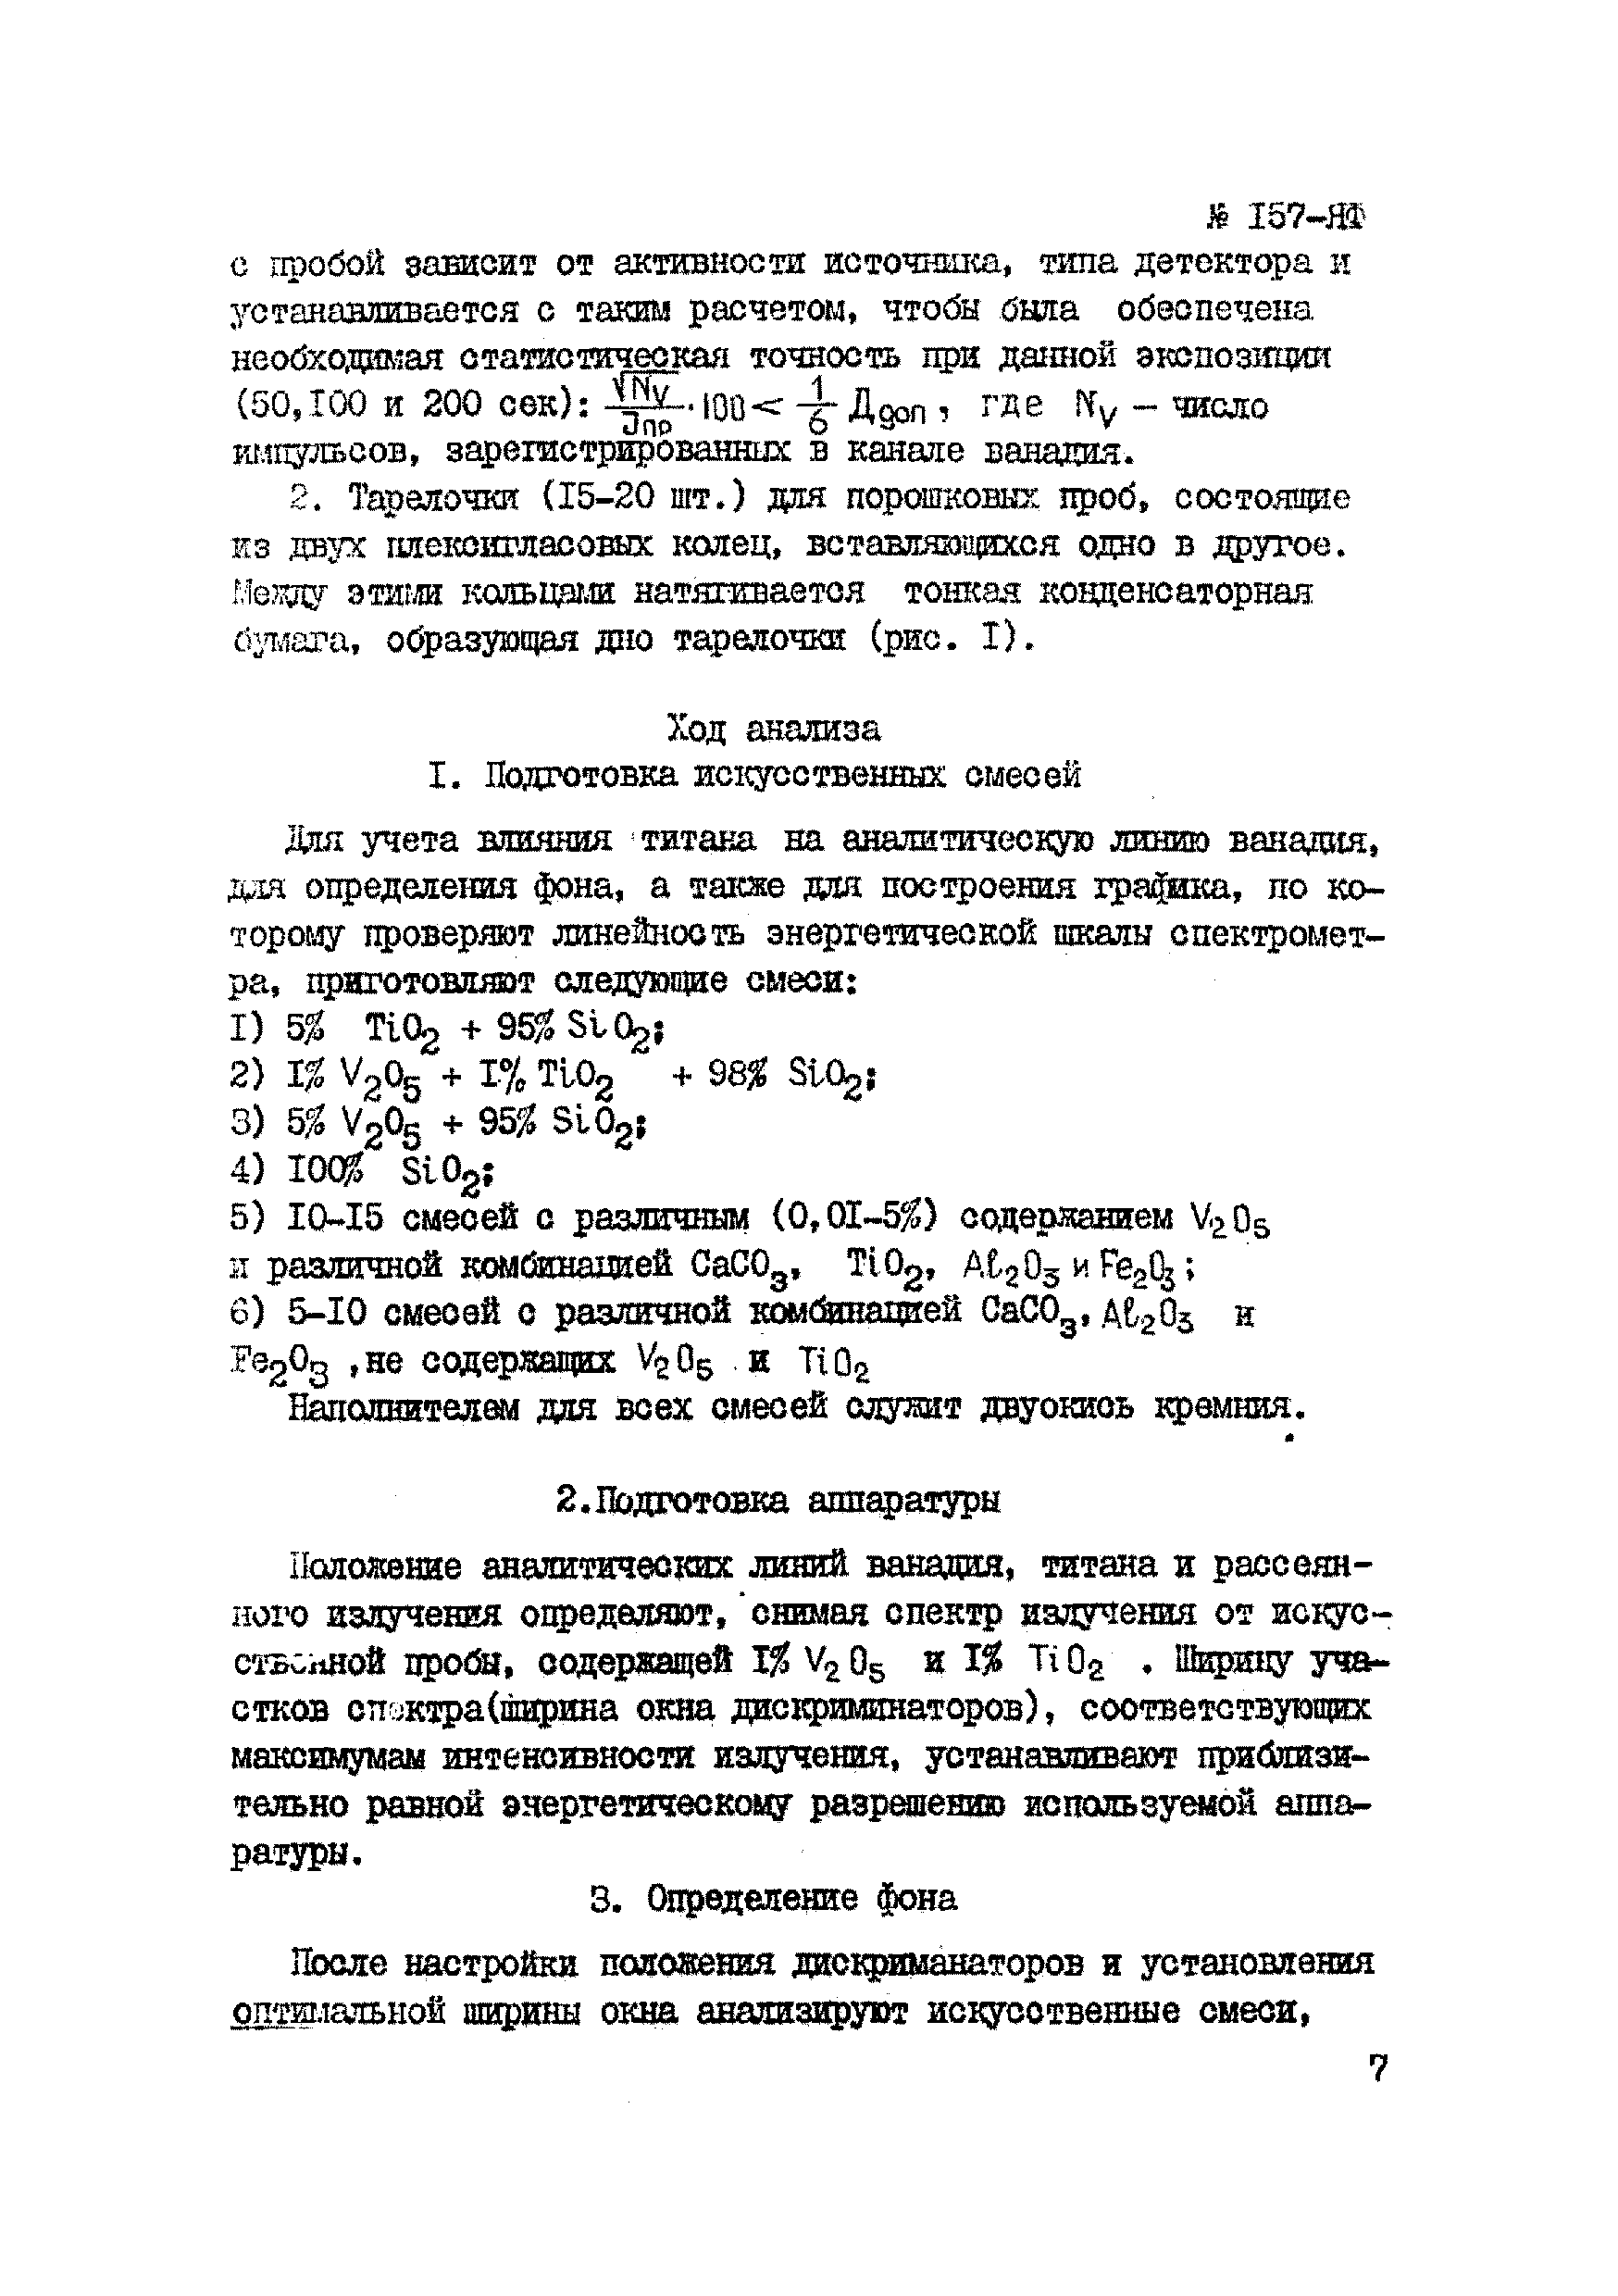 Инструкция НСАМ 157-ЯФ